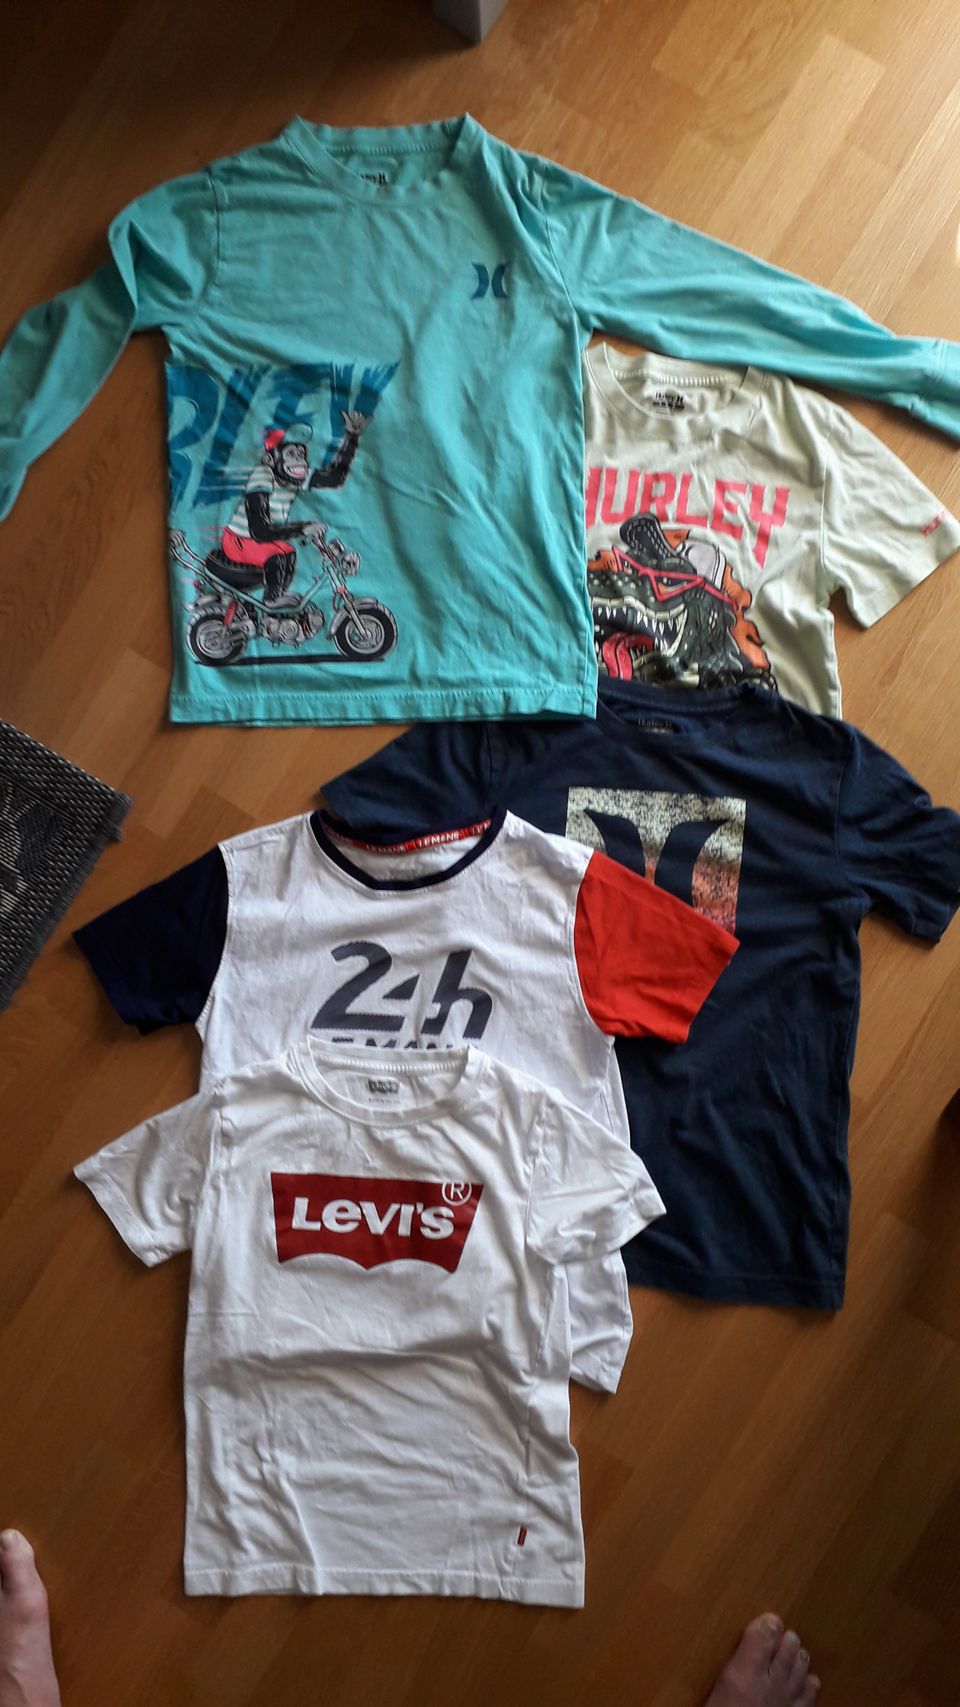 Levis, LeMans ja Hurley t-paitoja